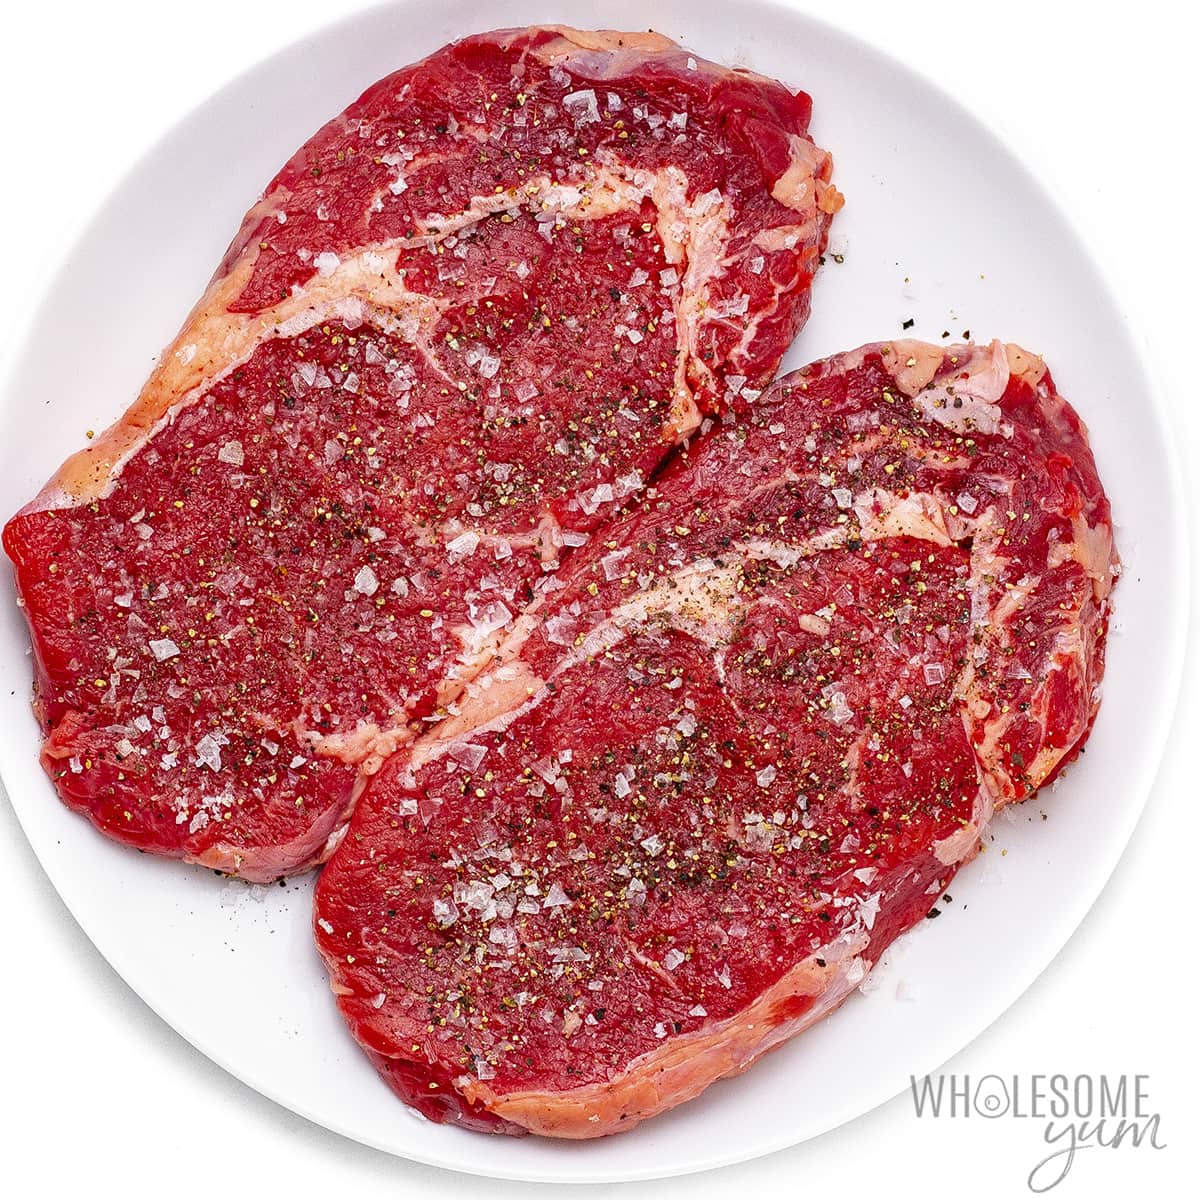 Seasoned steak on a plate.